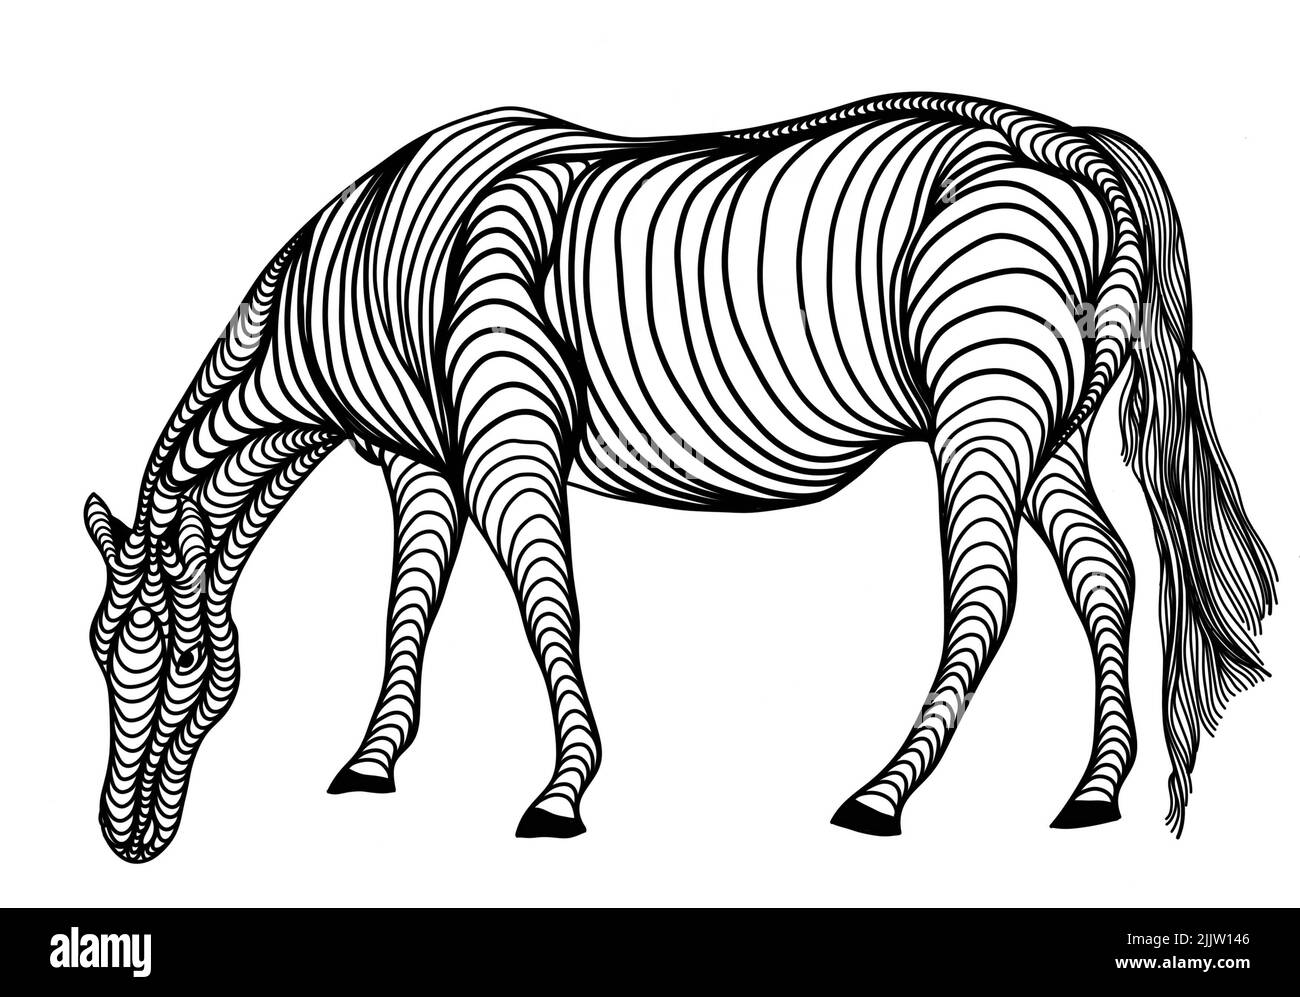 Eine einzigartige schwarz-weiße Linienkunst digitale Zeichnung eines Pferdes für Hintergrund, Logo und andere Illustrationen braucht Stockfoto